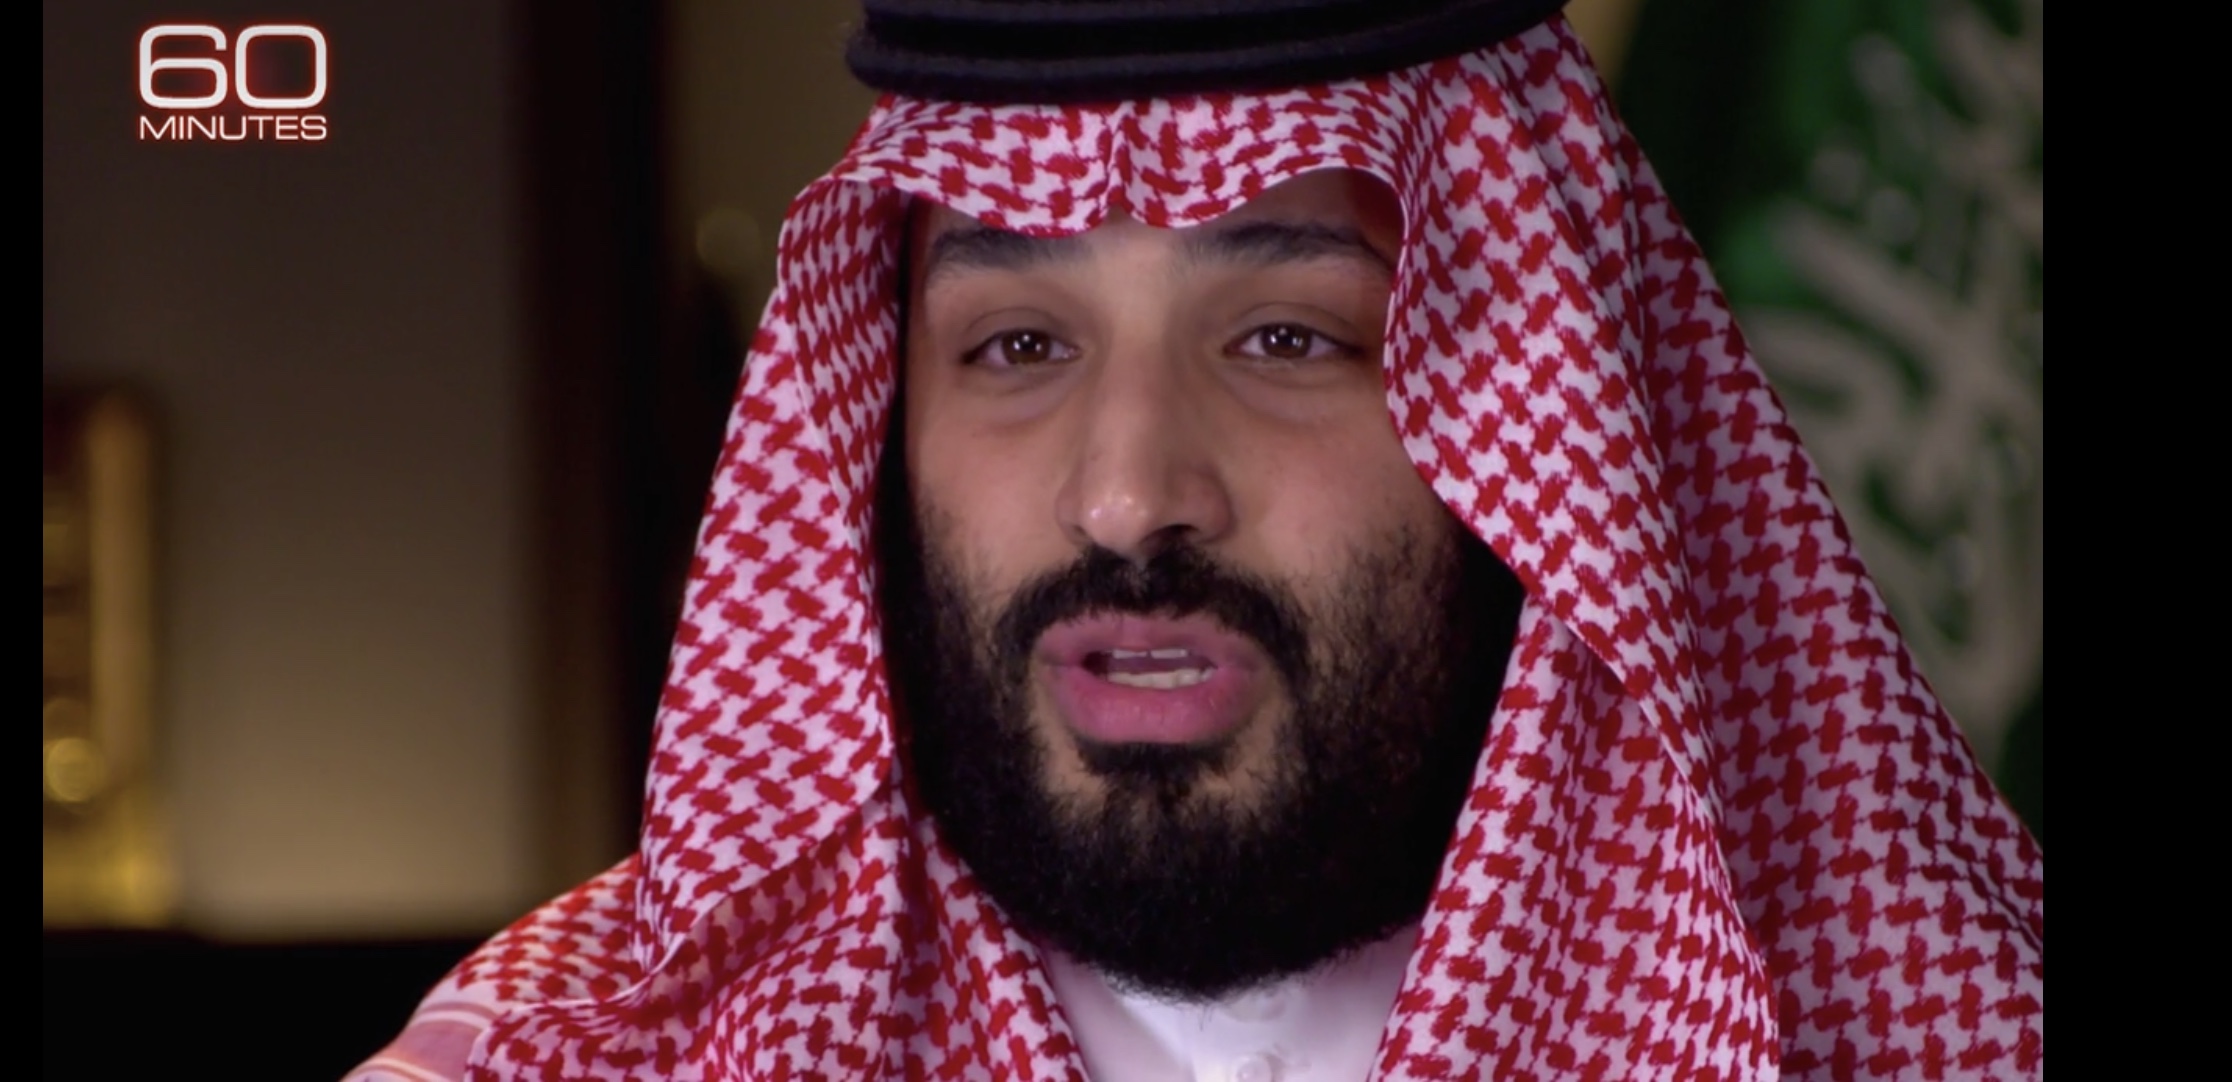 محمد بن سلمان في لقاء مع CBS :  كقائد يجب أن أكون متفائلا كل يوم